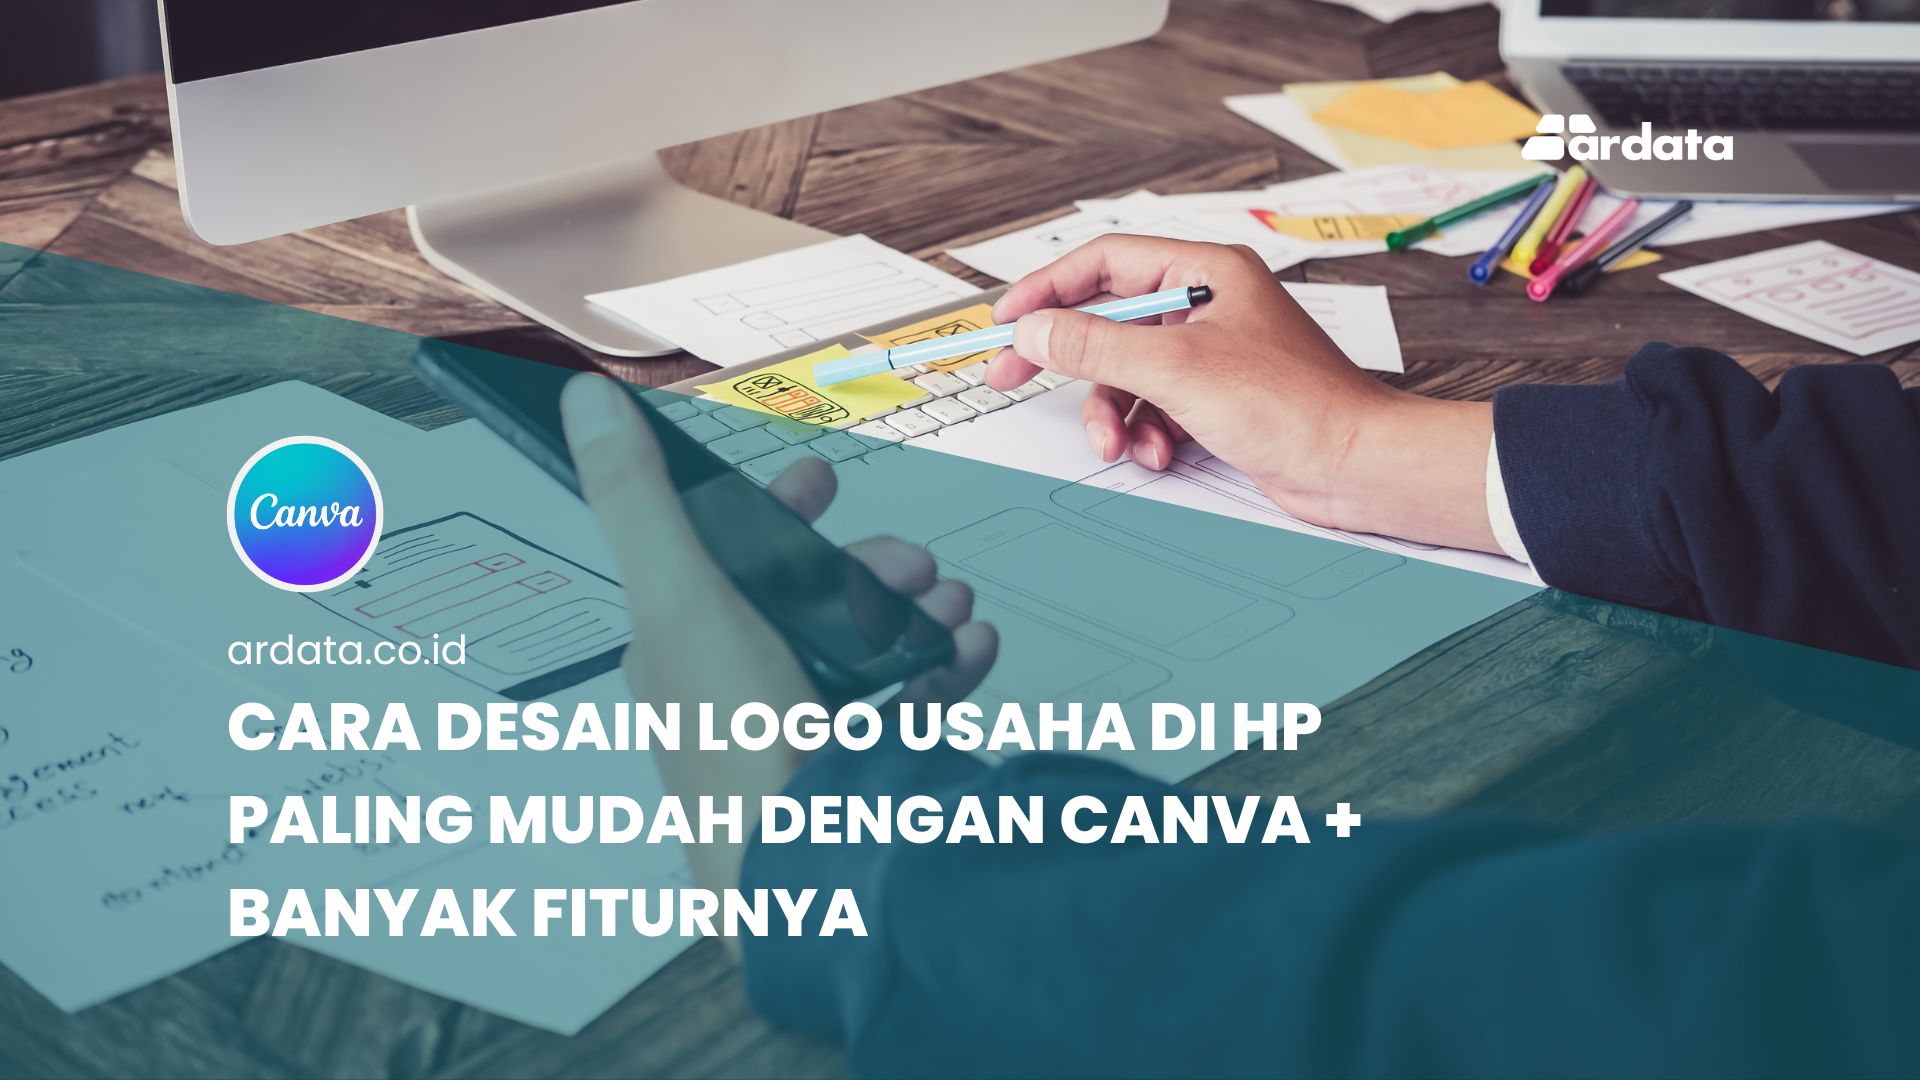 Cara Desain Logo Usaha di HP Paling Mudah dengan Canva + Banyak Fiturnya